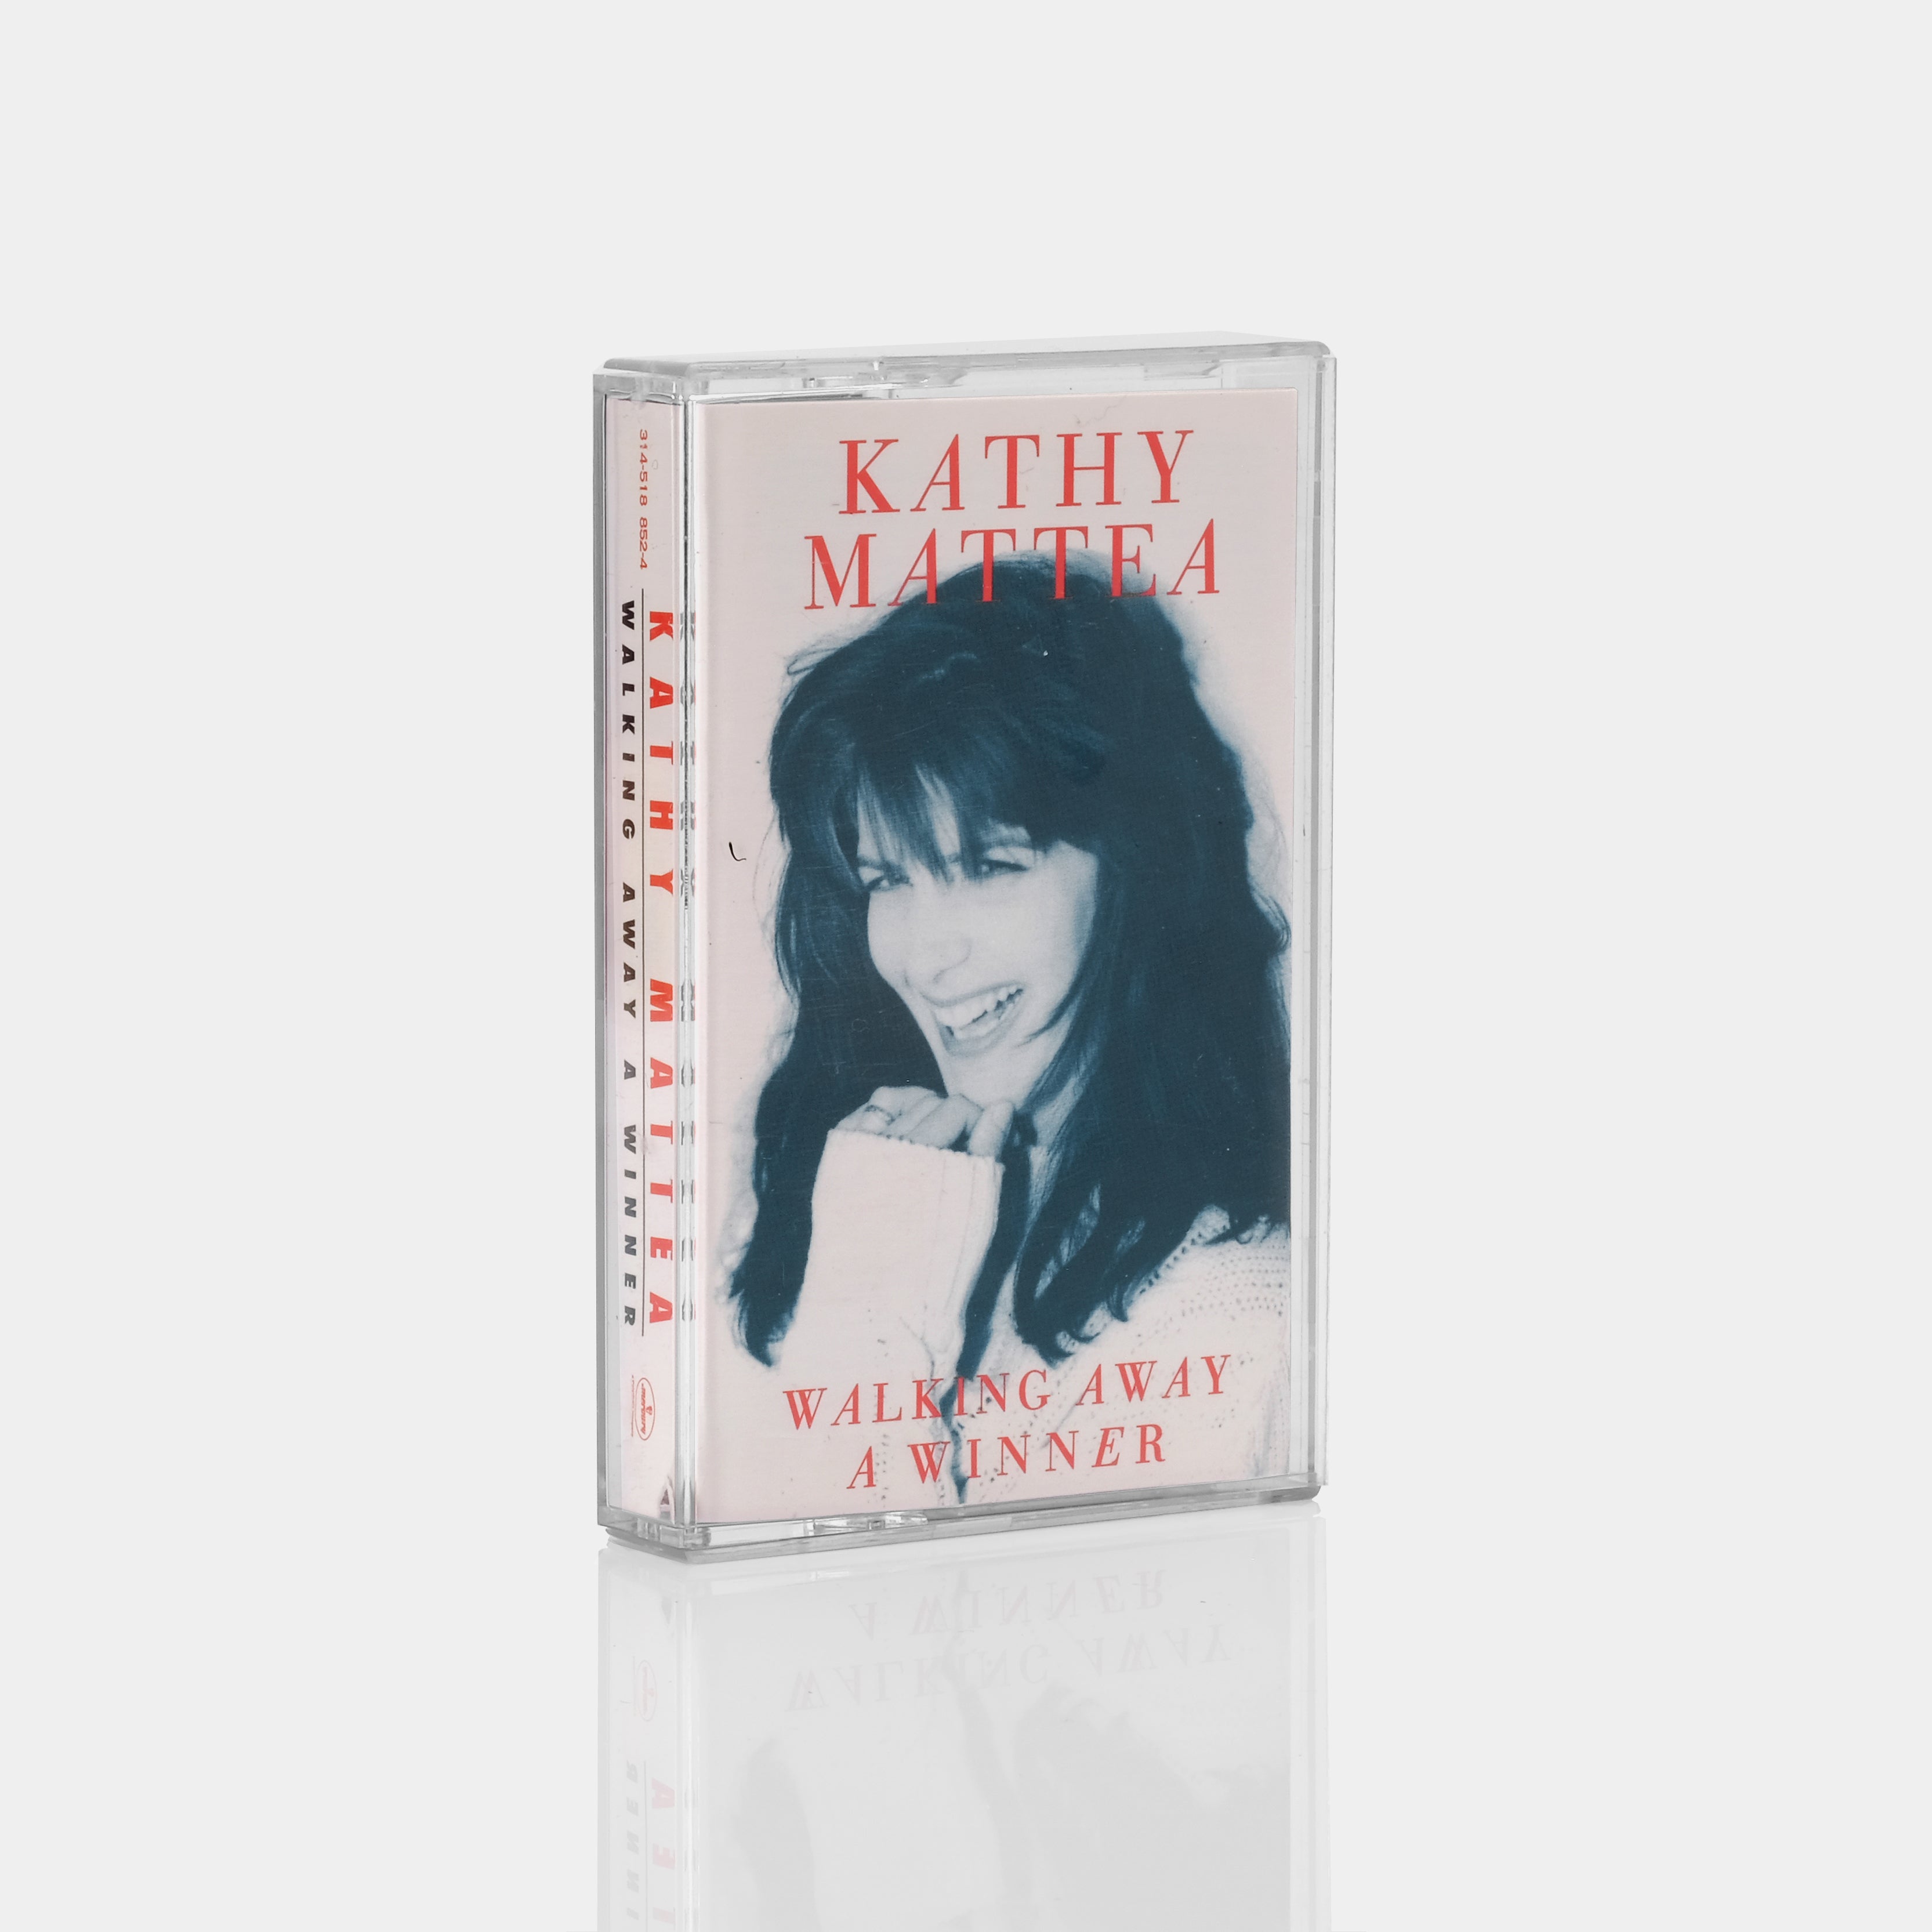 Kathy Mattea - Walking Away A Winner Cassette Tape